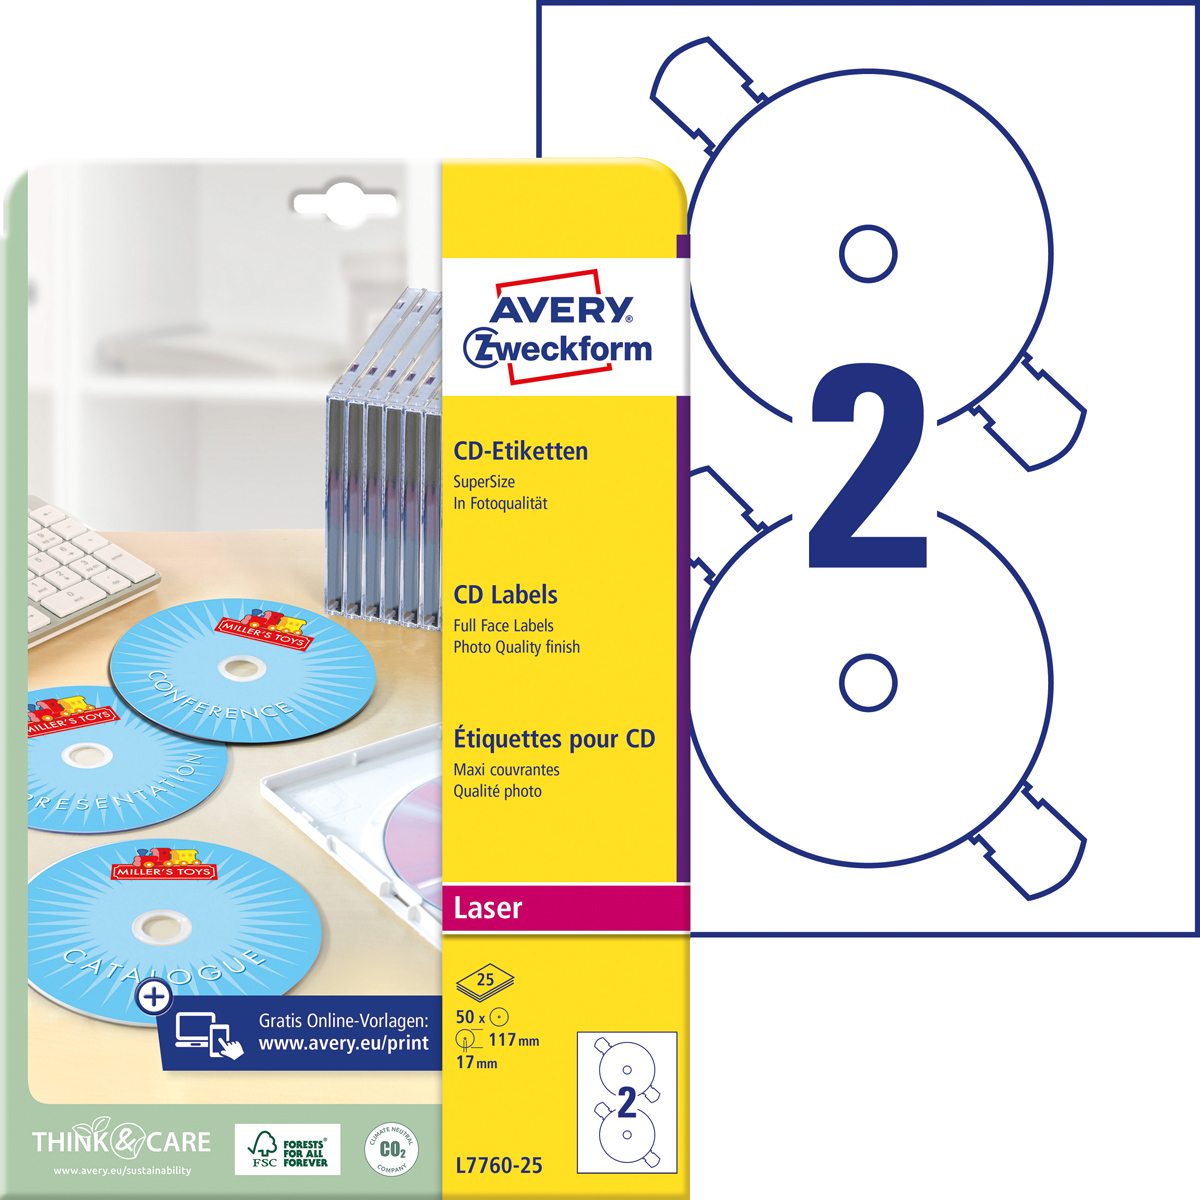 Avery Zweckform L7760-25 CD-Etiketten SuperSize,, Ø 117 mm, CDs, 25 Bogen/50 Etiketten, weiß